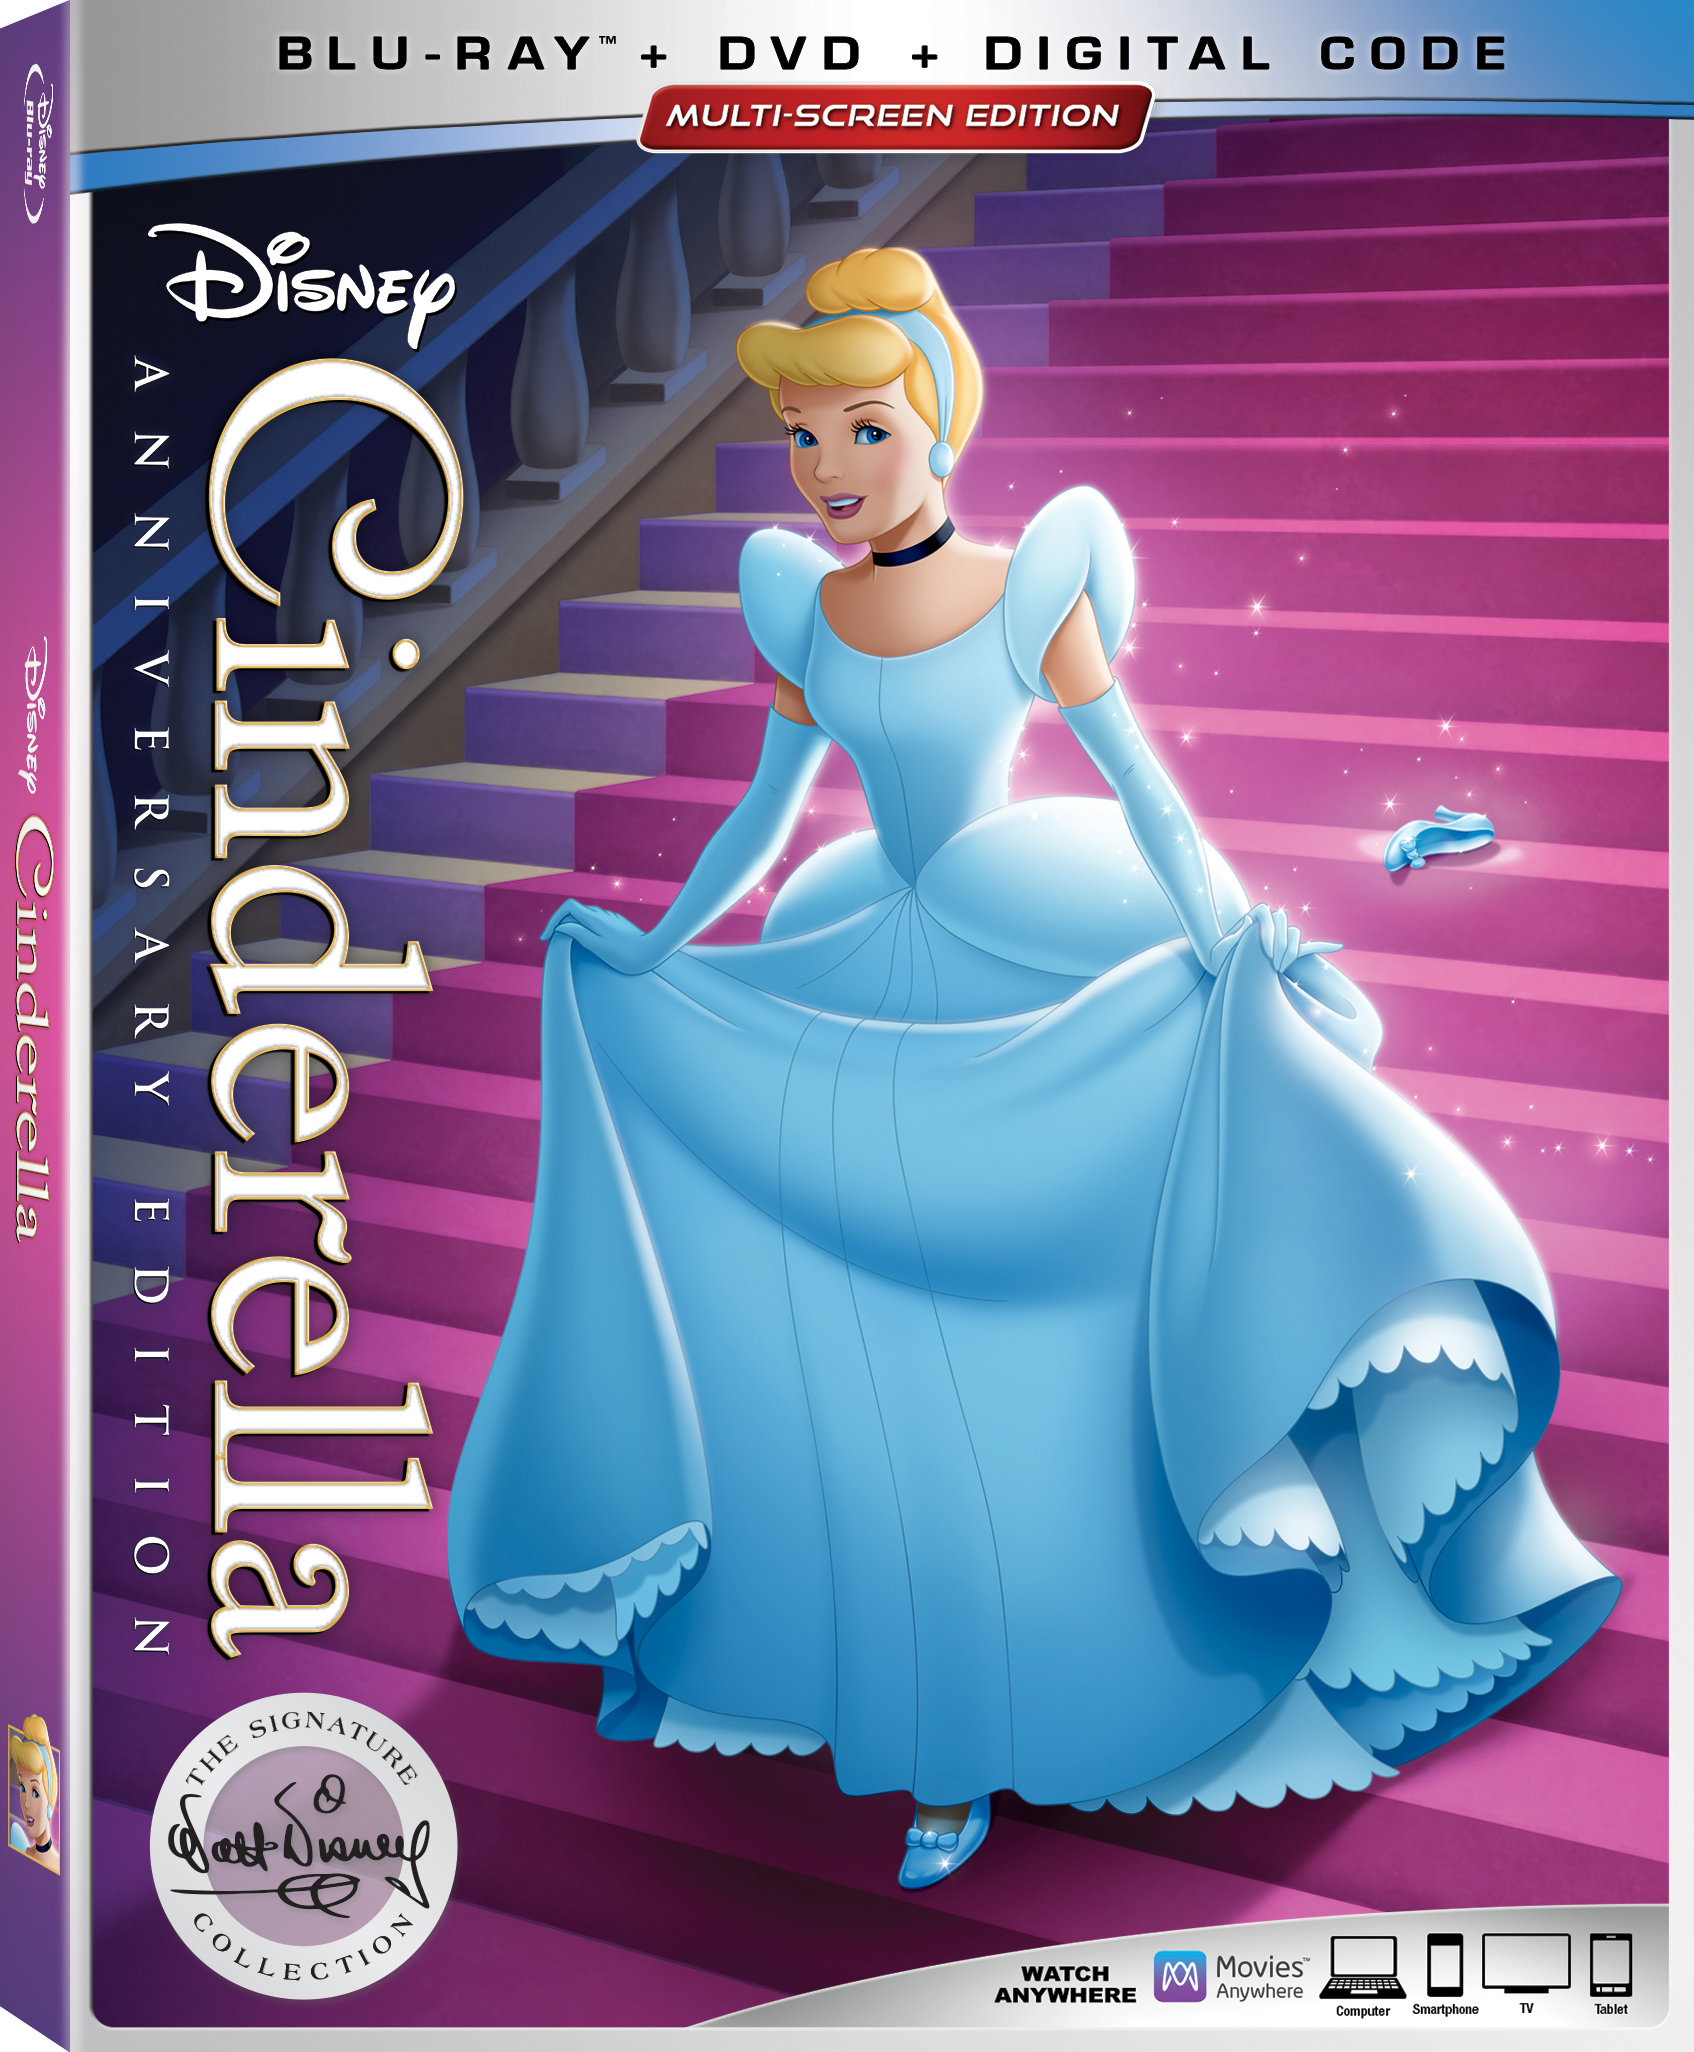 Cinderella Celebrates 70th Anniversary